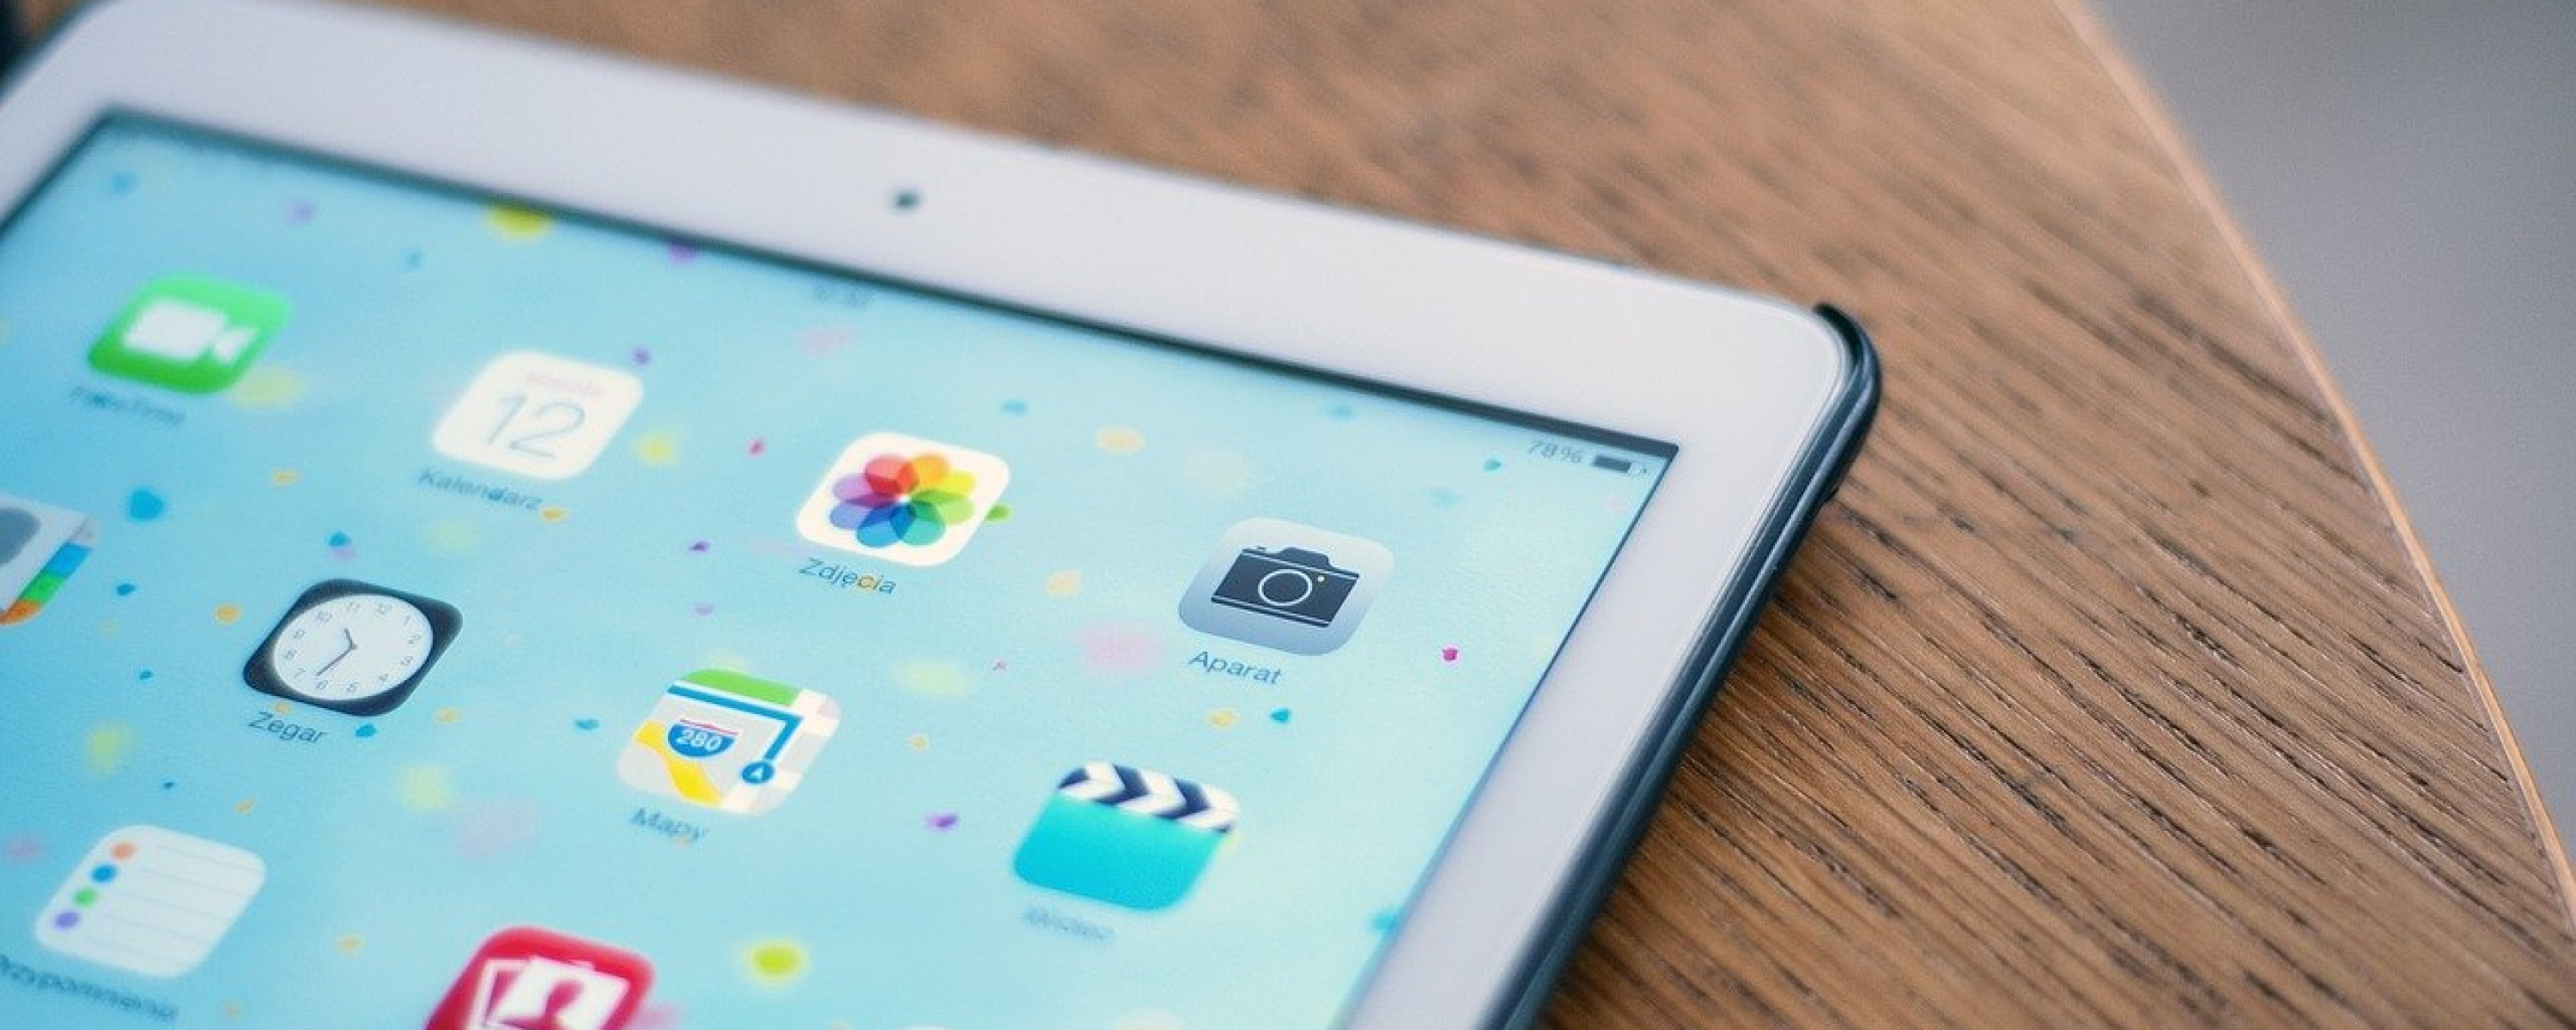 ¿Qué hacer con un iPad viejo? 10 ideas ingeniosas para reutilizarlo